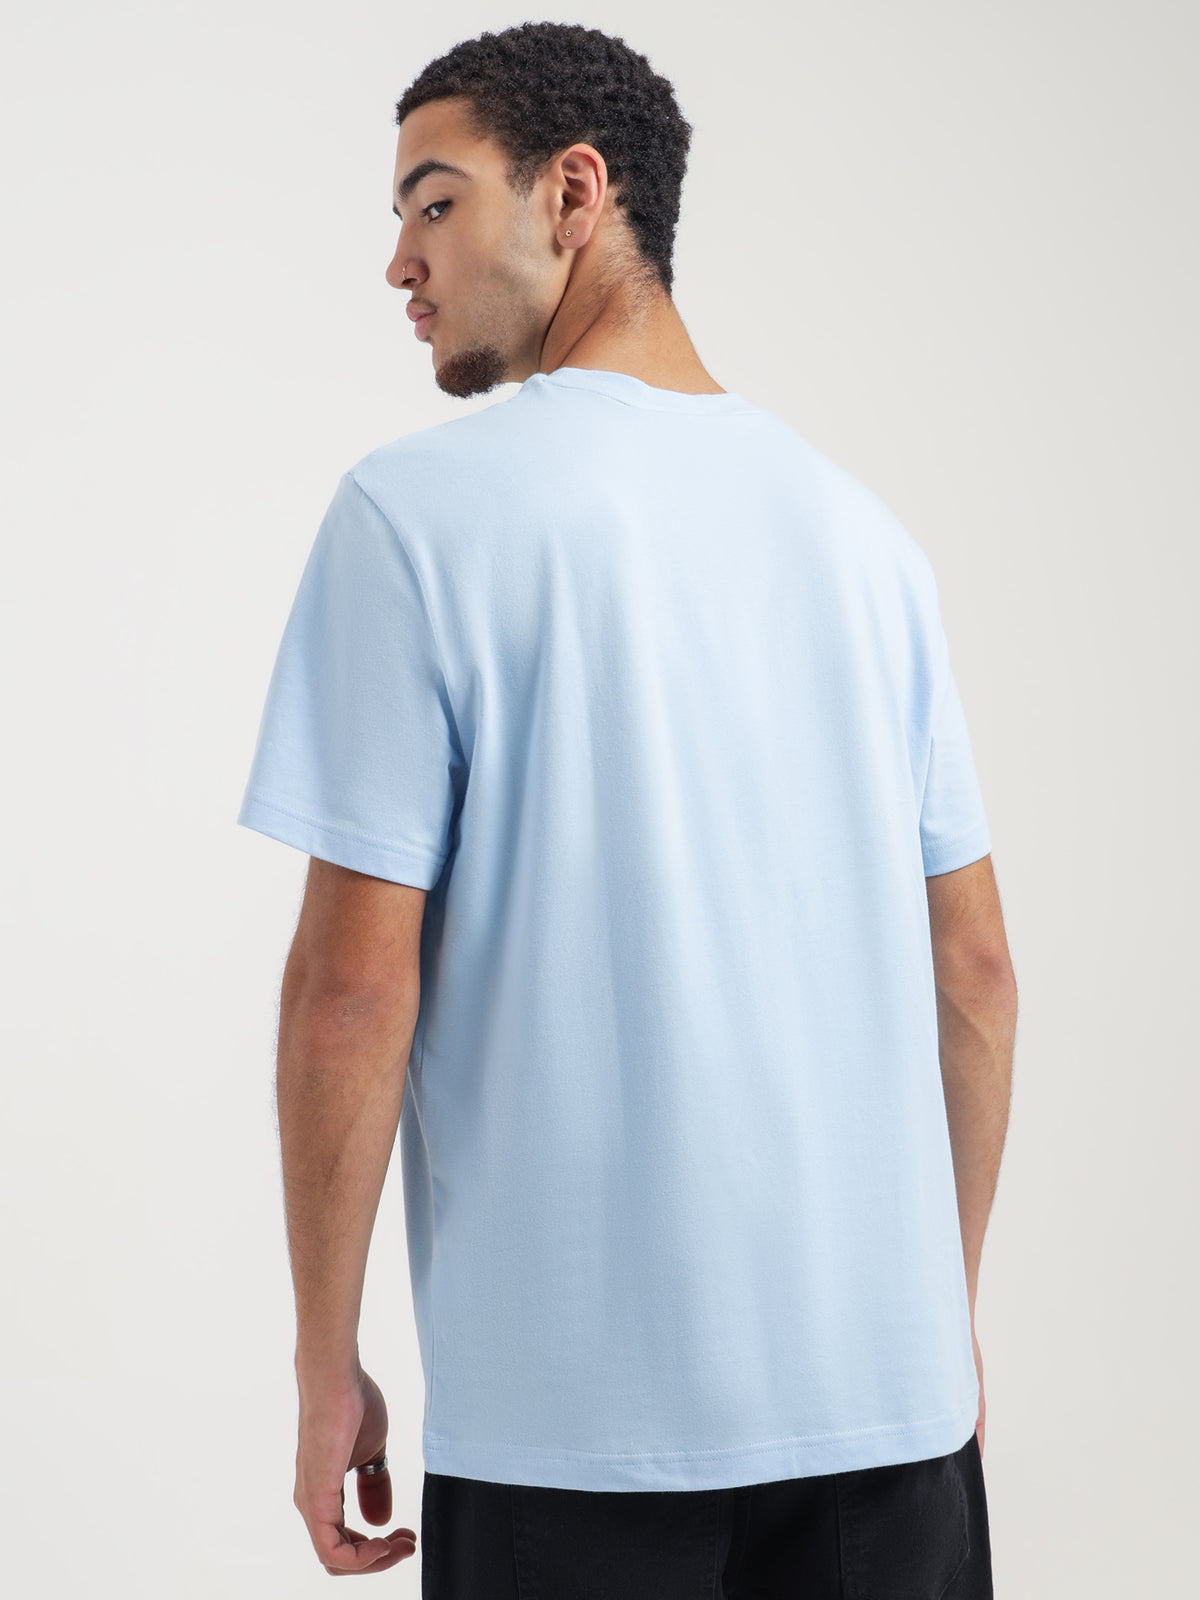 Soft Branding T-Shirt in Light Blue